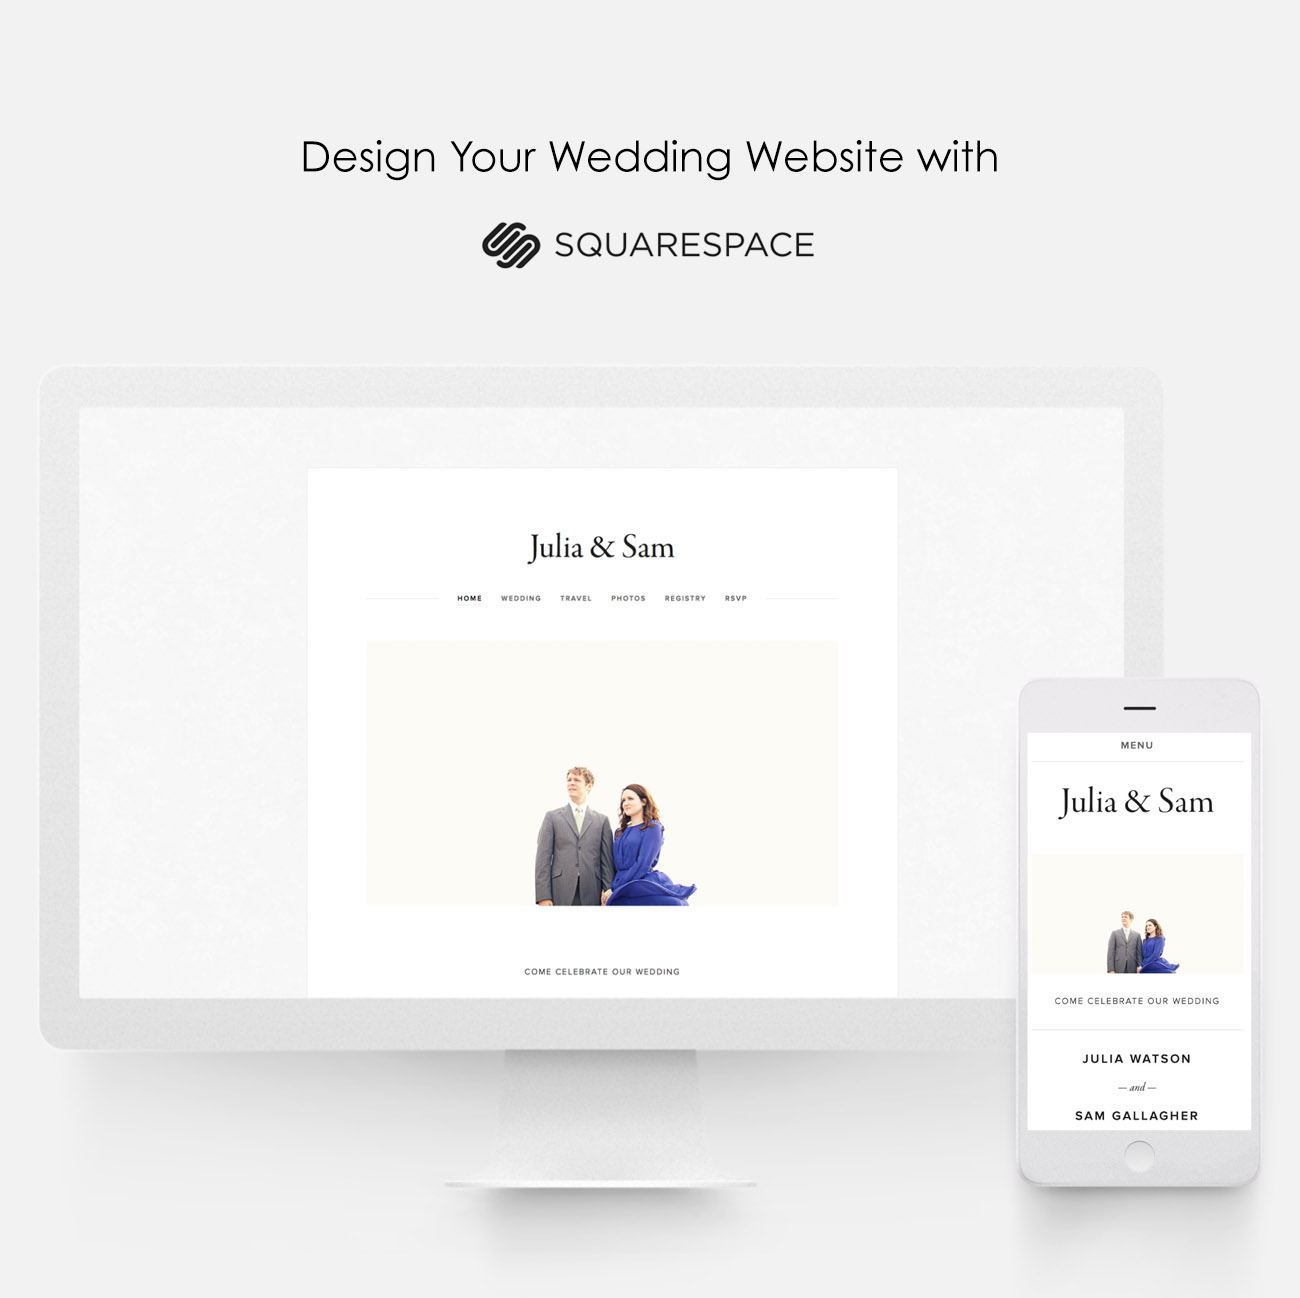 Design a Custom Wedding Website with Squarespace